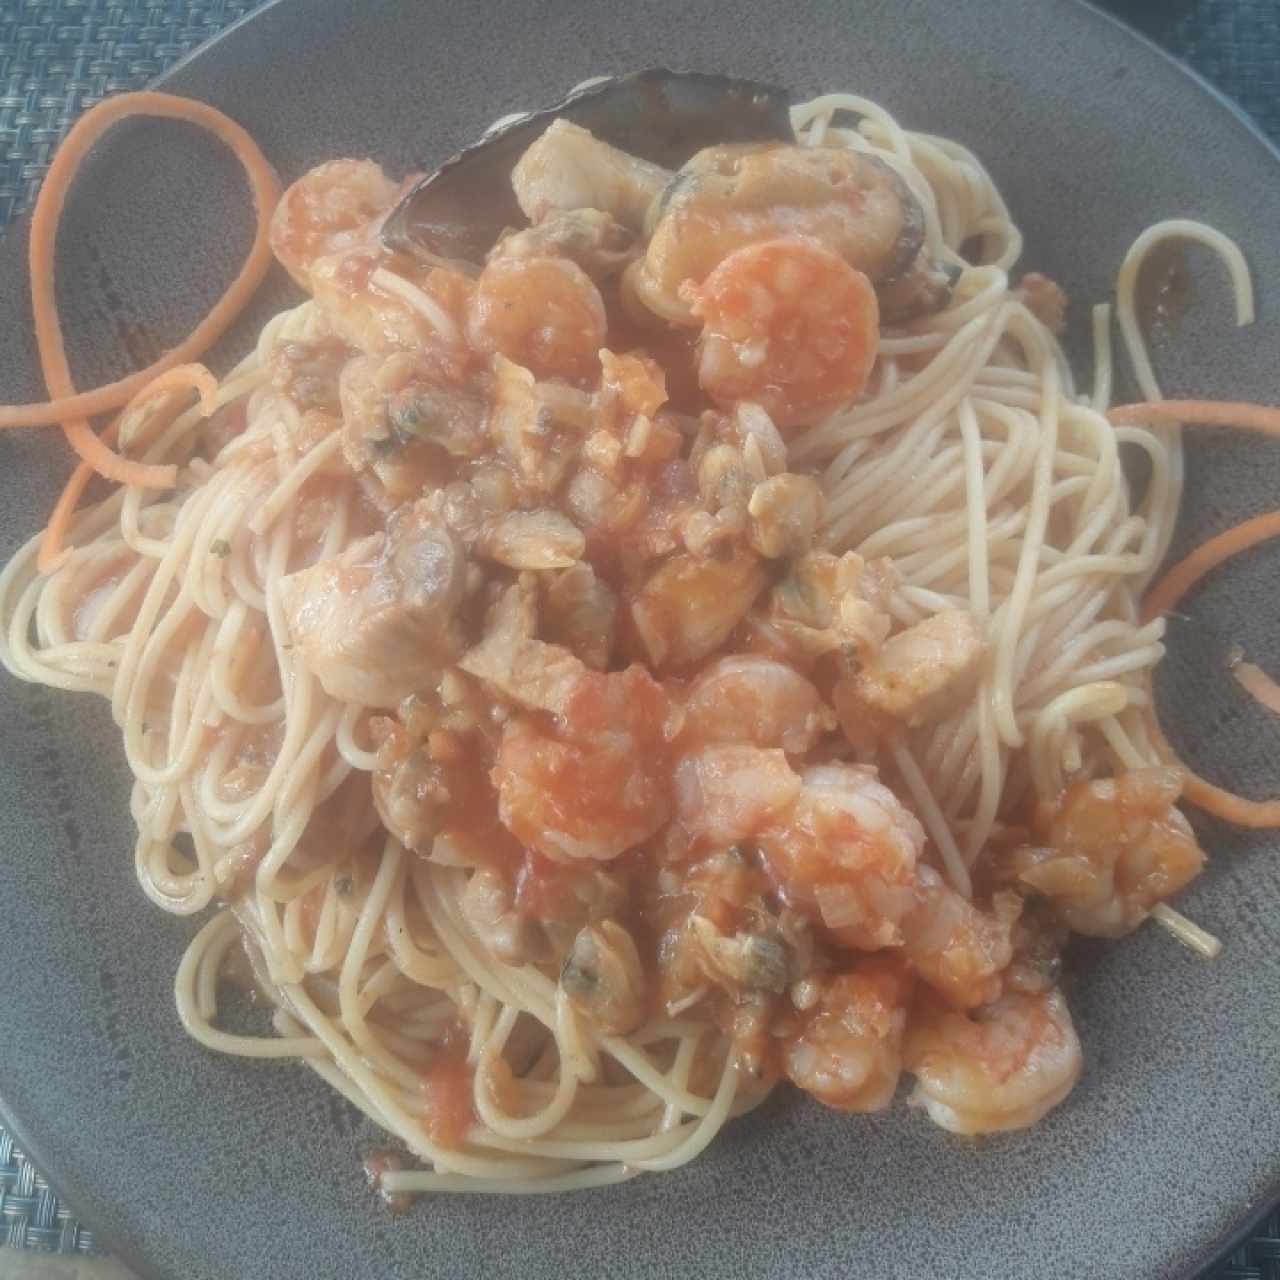 spaghetti a la pescatore, en salsa roja